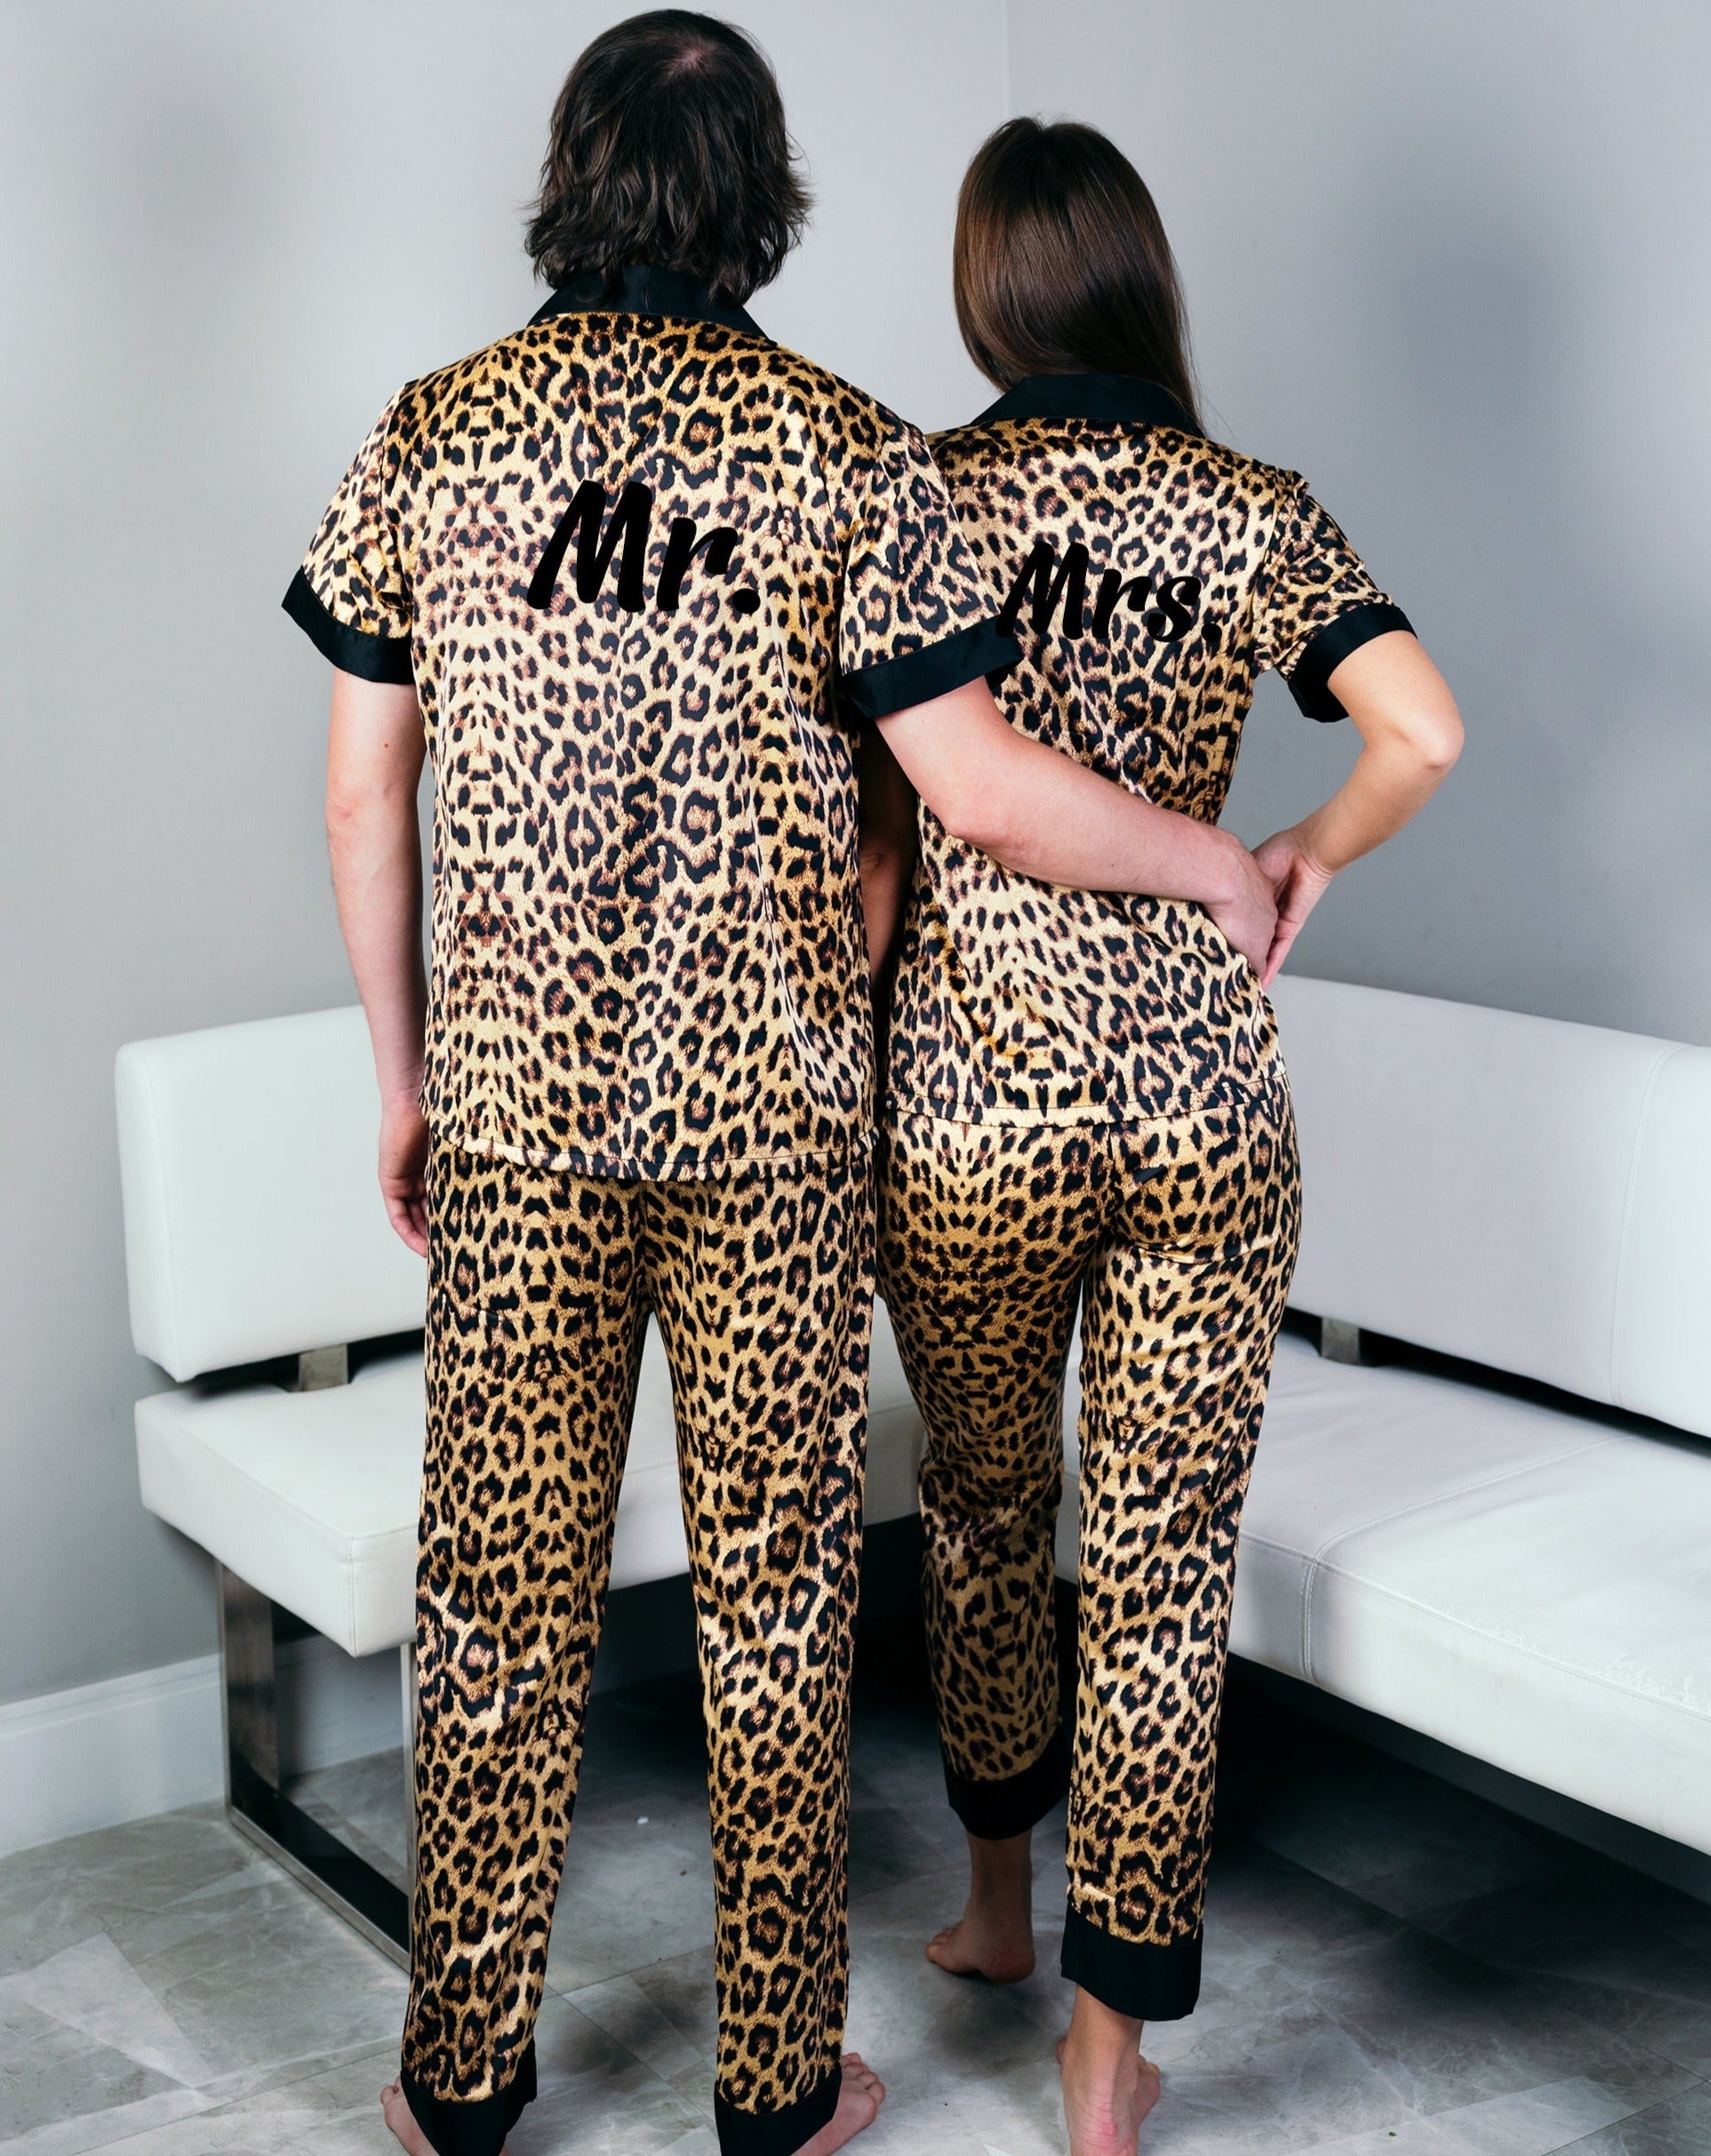 Leopard Pajamas Anniversary Couple, Pajamas Honeymoon Set for – Gifts Pjs, gift Wedding Xmas Boutique Miami Sunny Pajamas Gift, Satin Custom